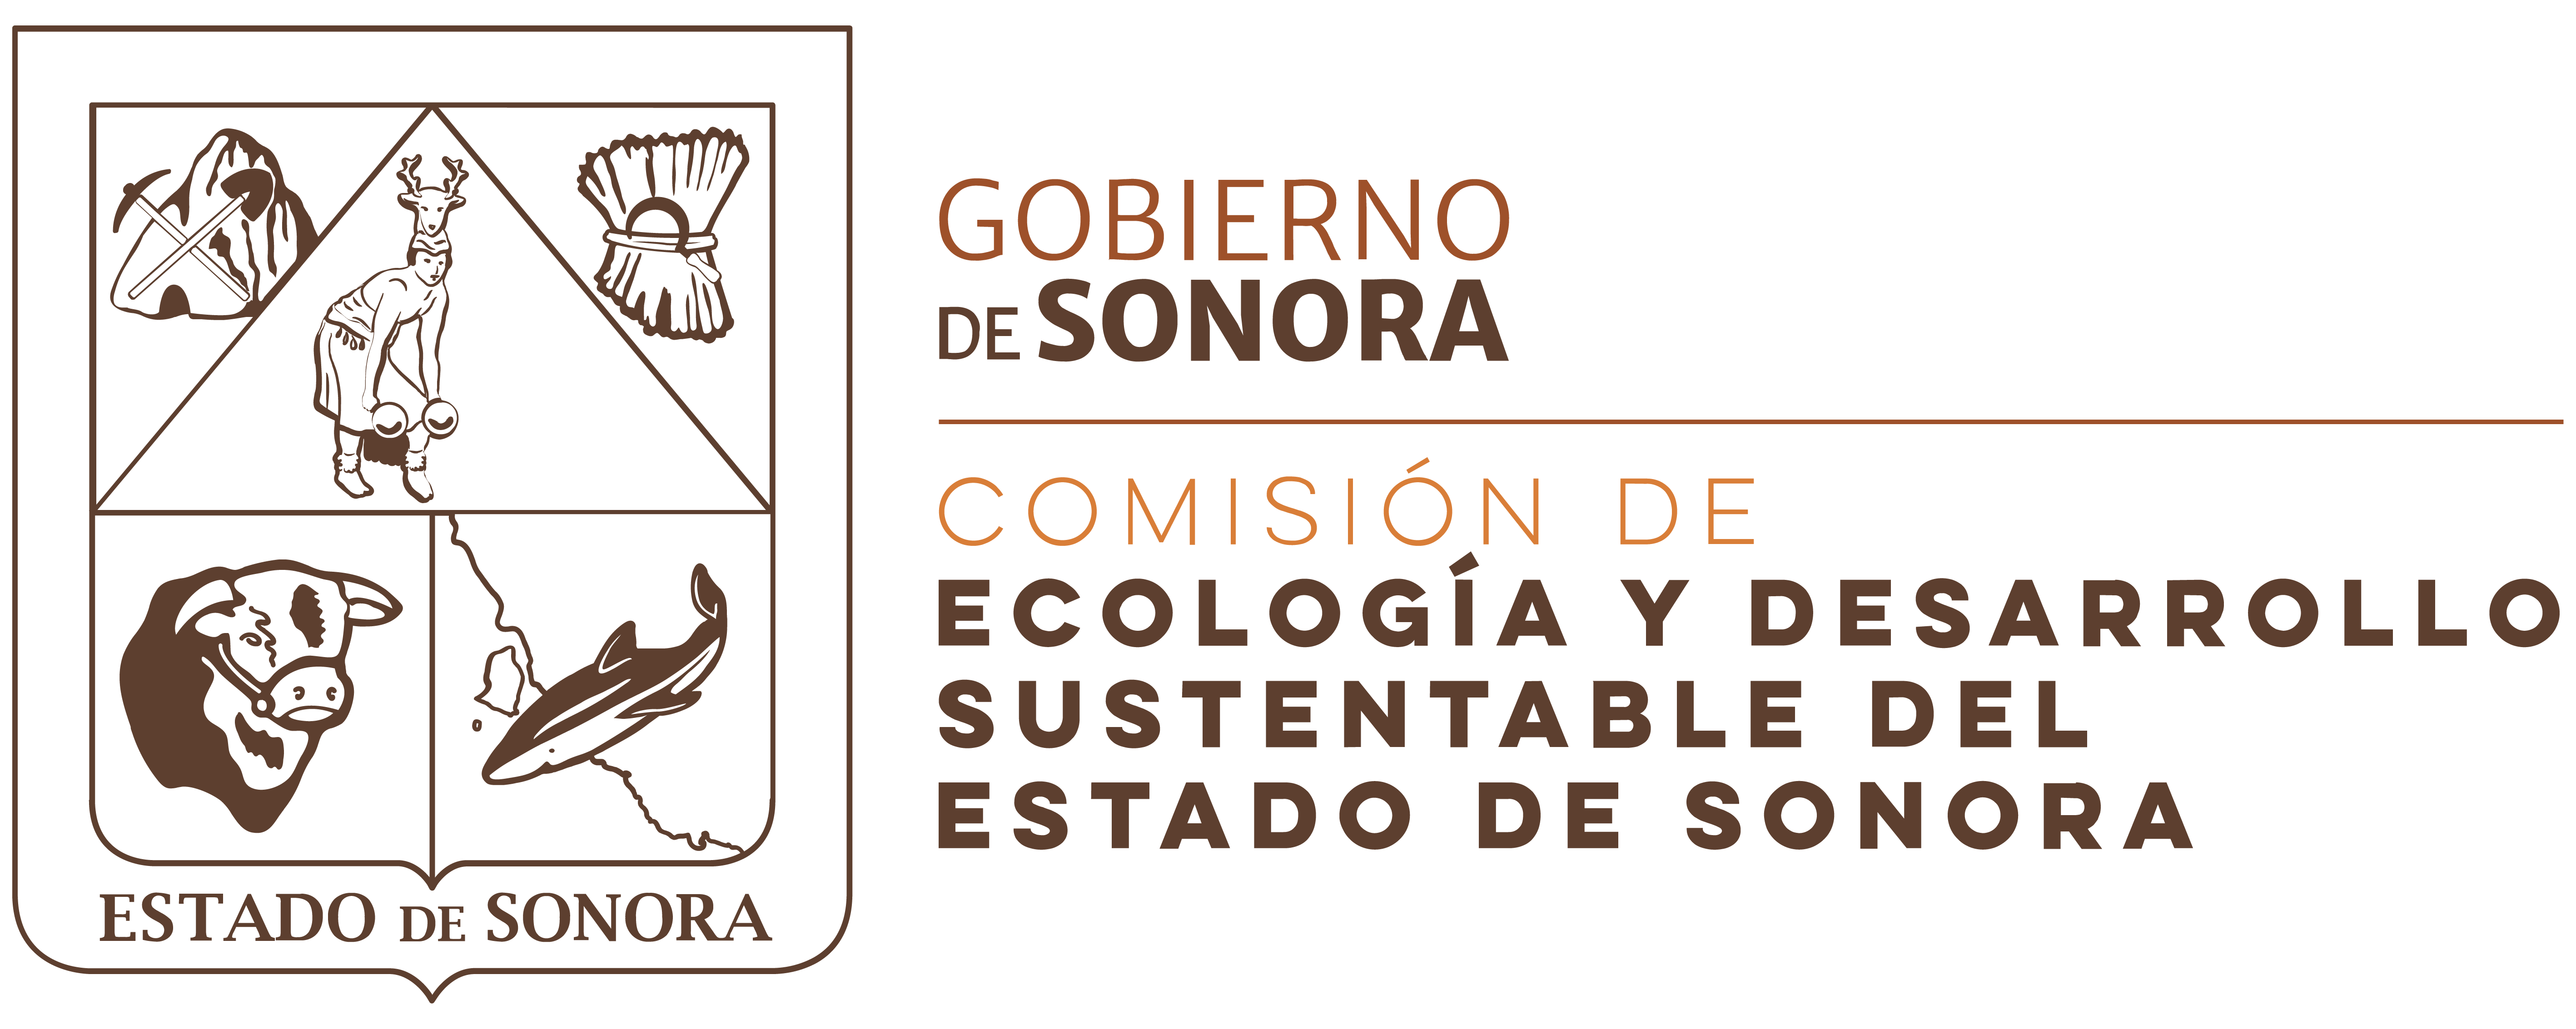 Comisión de Ecología y Desarrollo Sustentable del Estado de Sonora